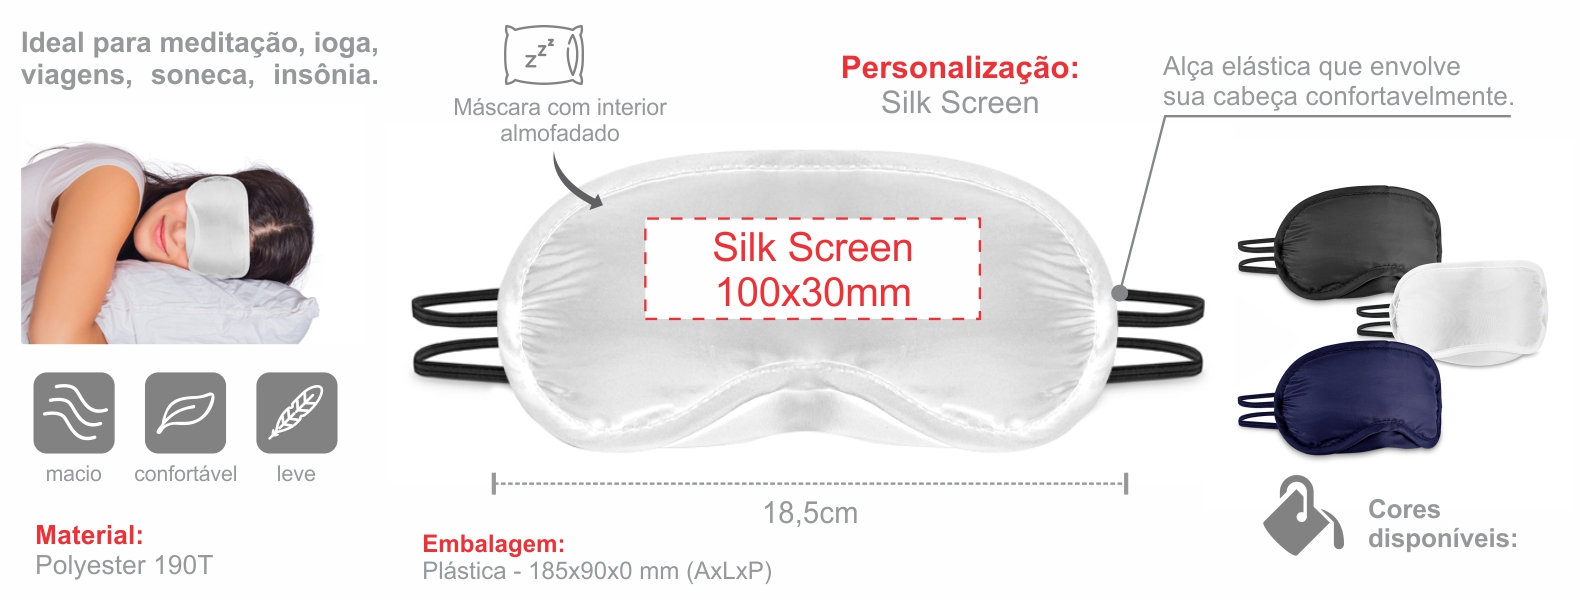 Máscara para dormir em Polyester 190T branca. Conta com interior almofadado e duas alças.